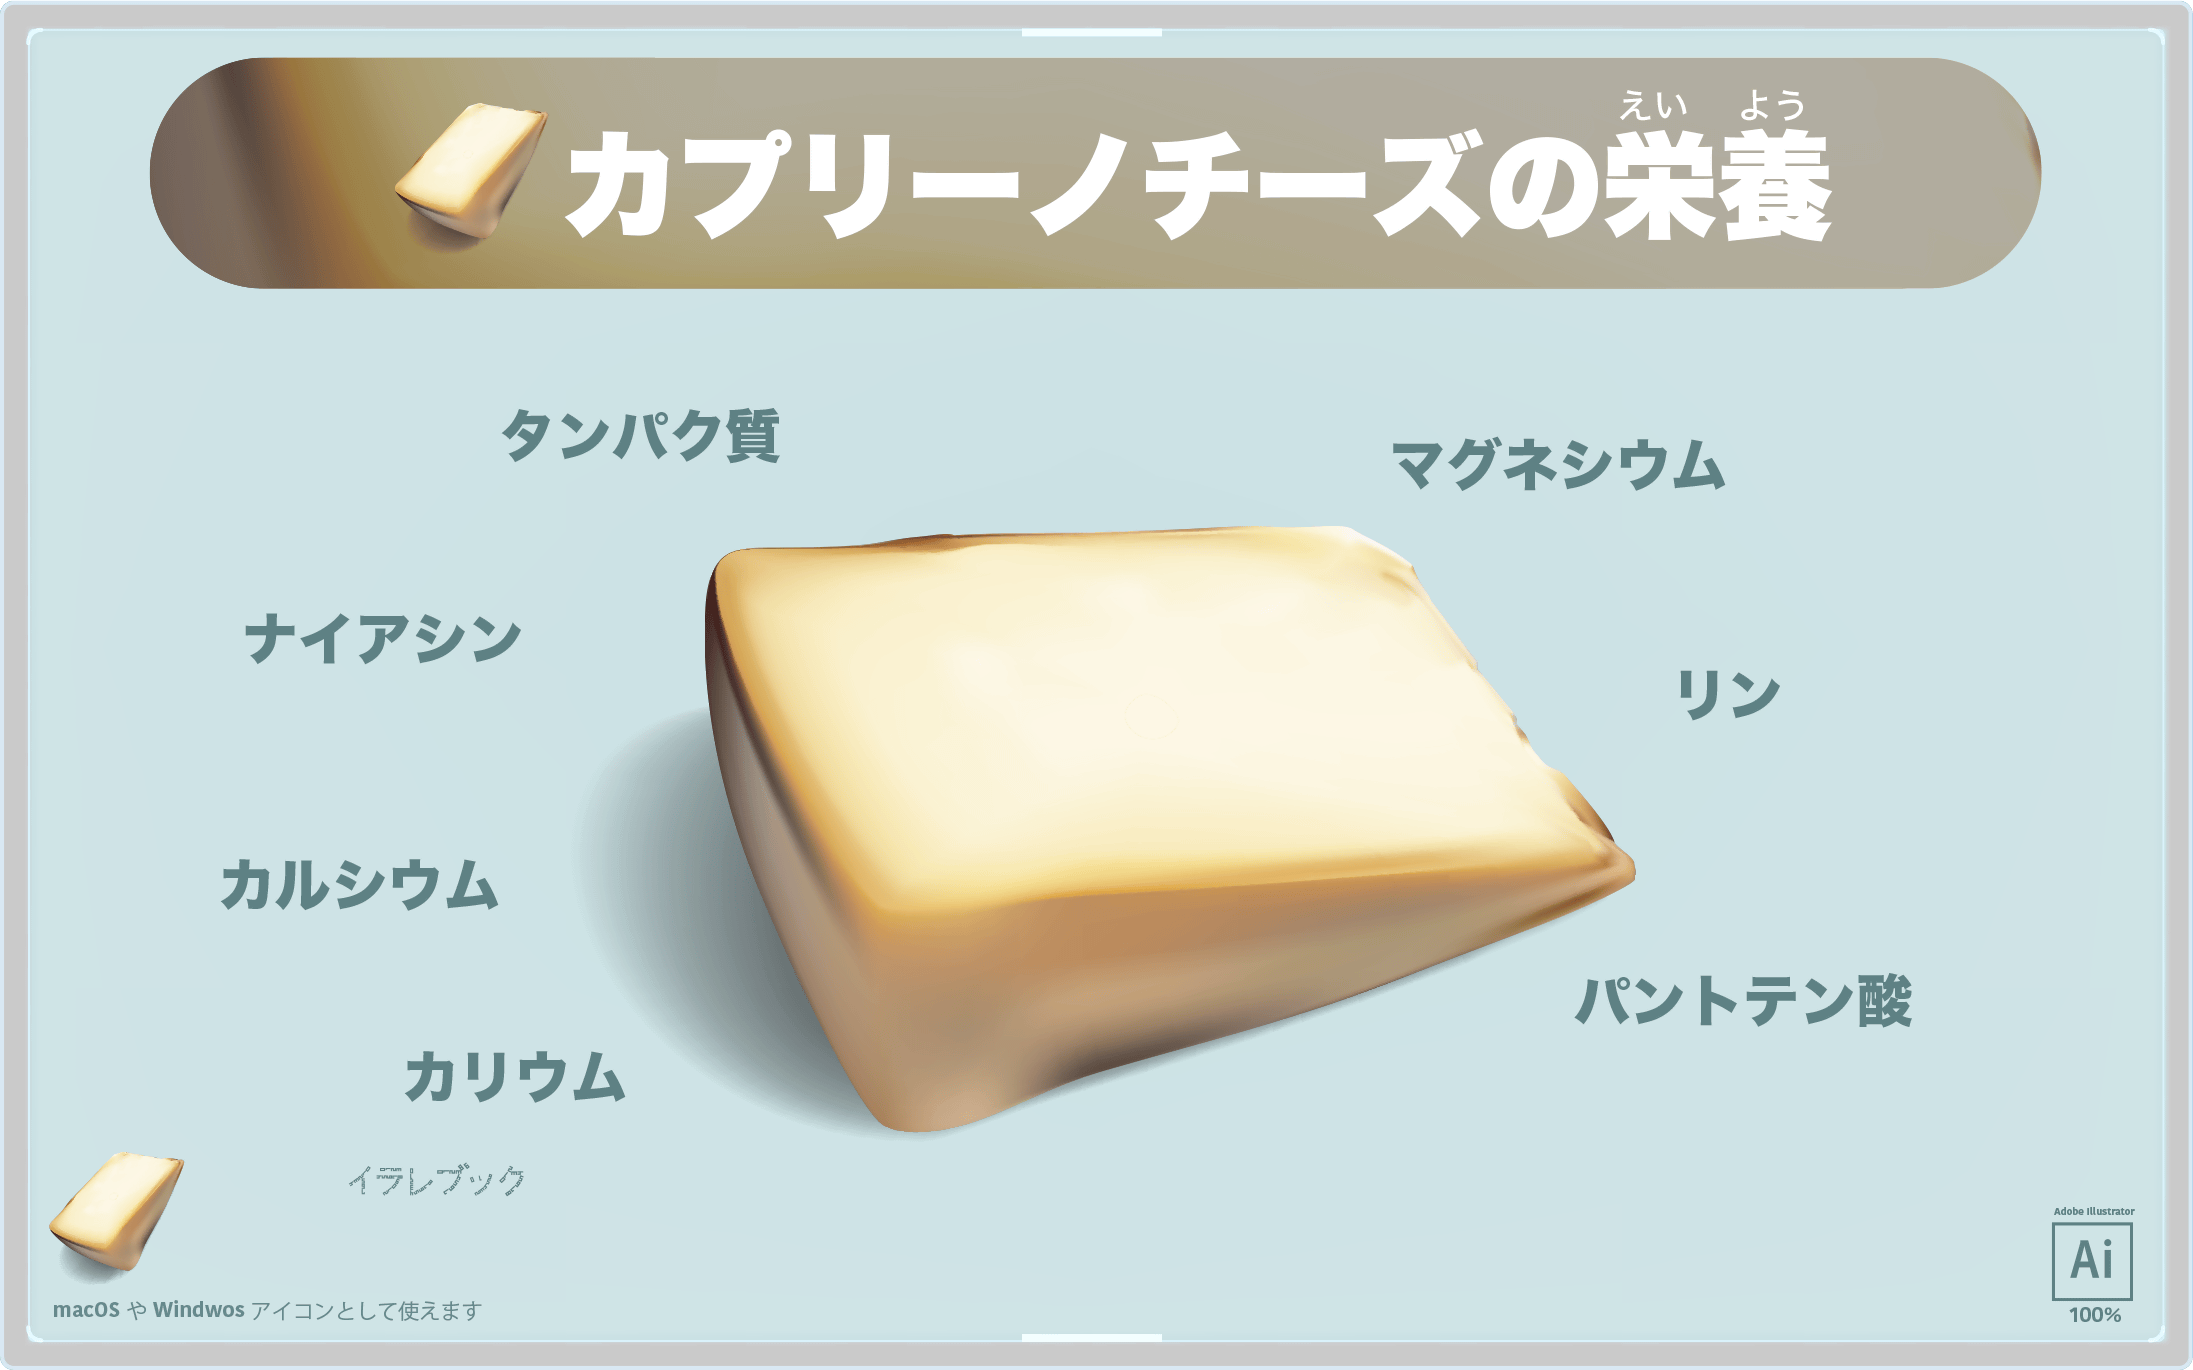 カプリーノチーズの栄養